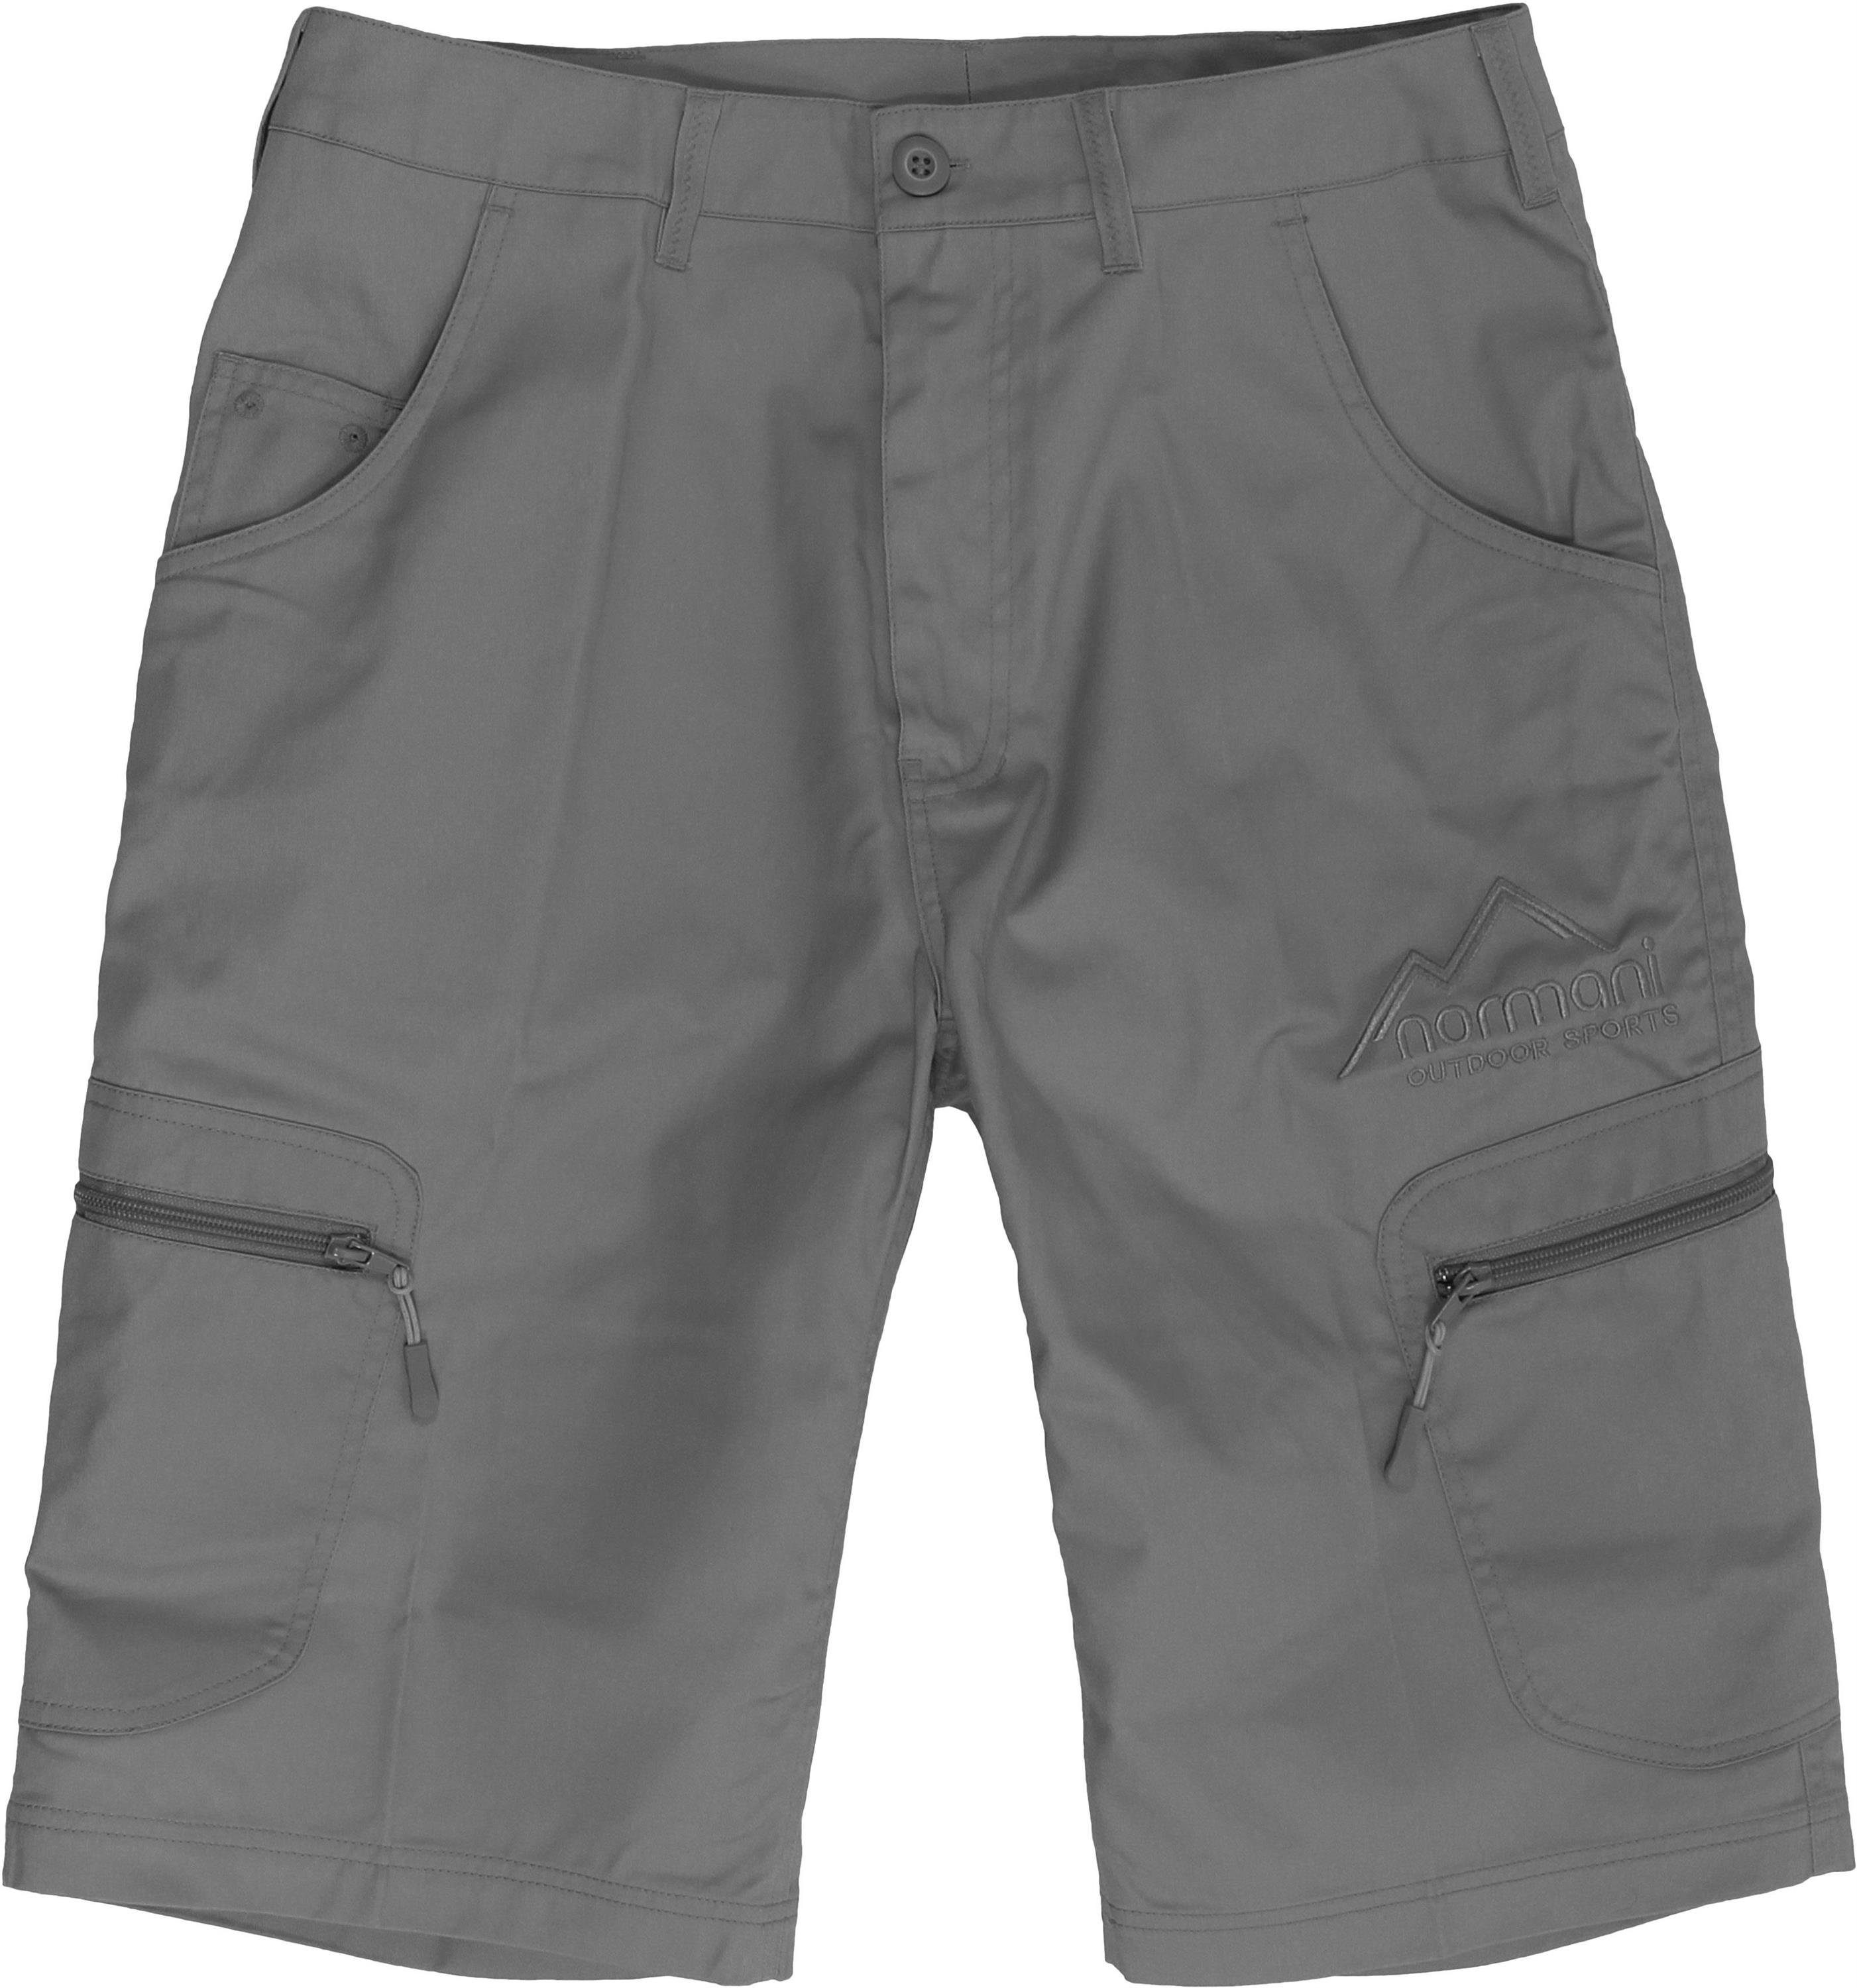 normani Bermudas Herren Shorts mit UV-Schutz Valley BDU Sommershorts mit Sonnenschutzfaktor 50+ Grau